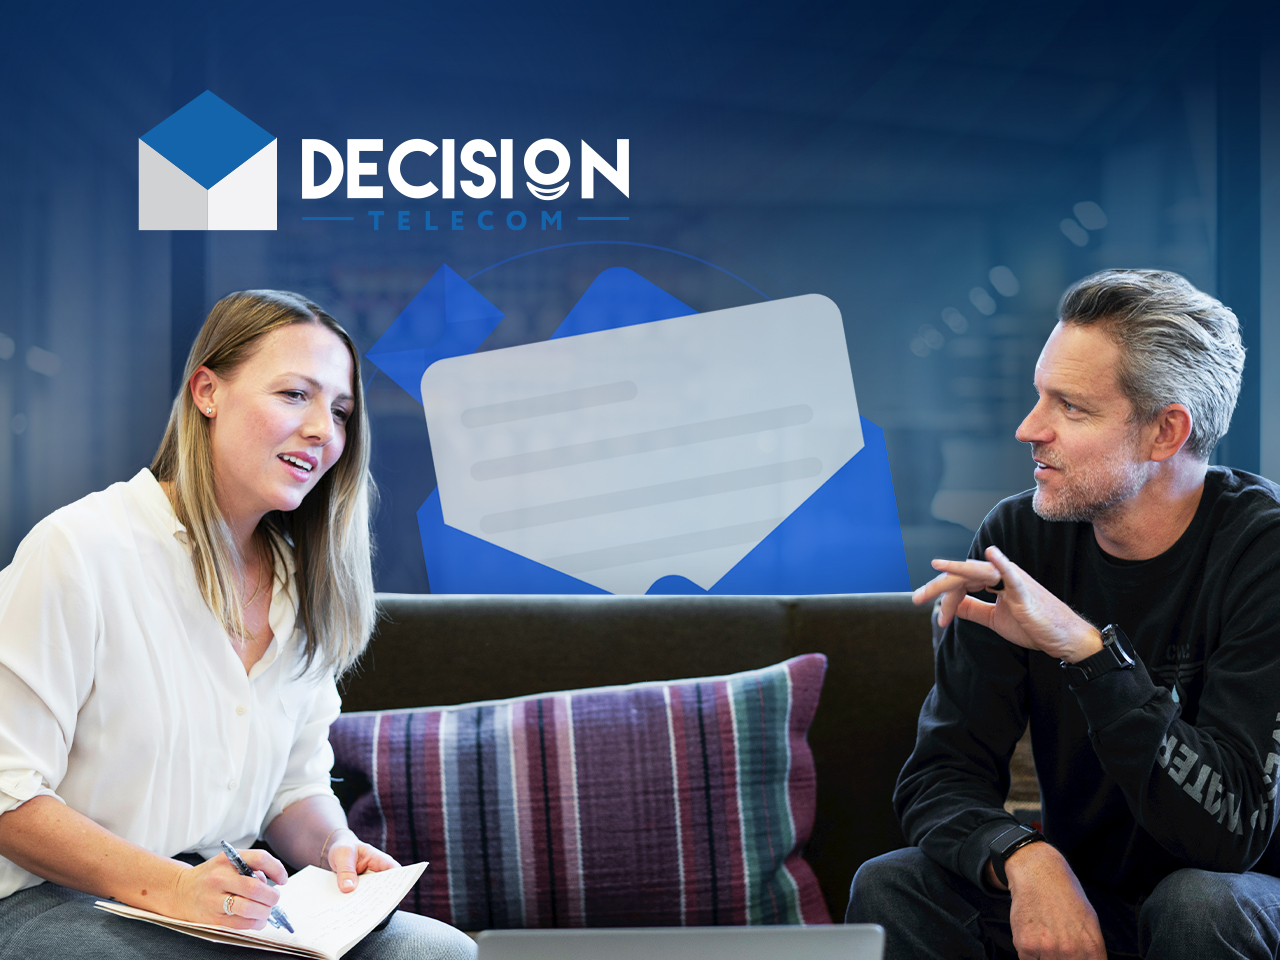 Омниканальная поддержка от Decision Telecom — основа качественного обслуживания ваших клиентов